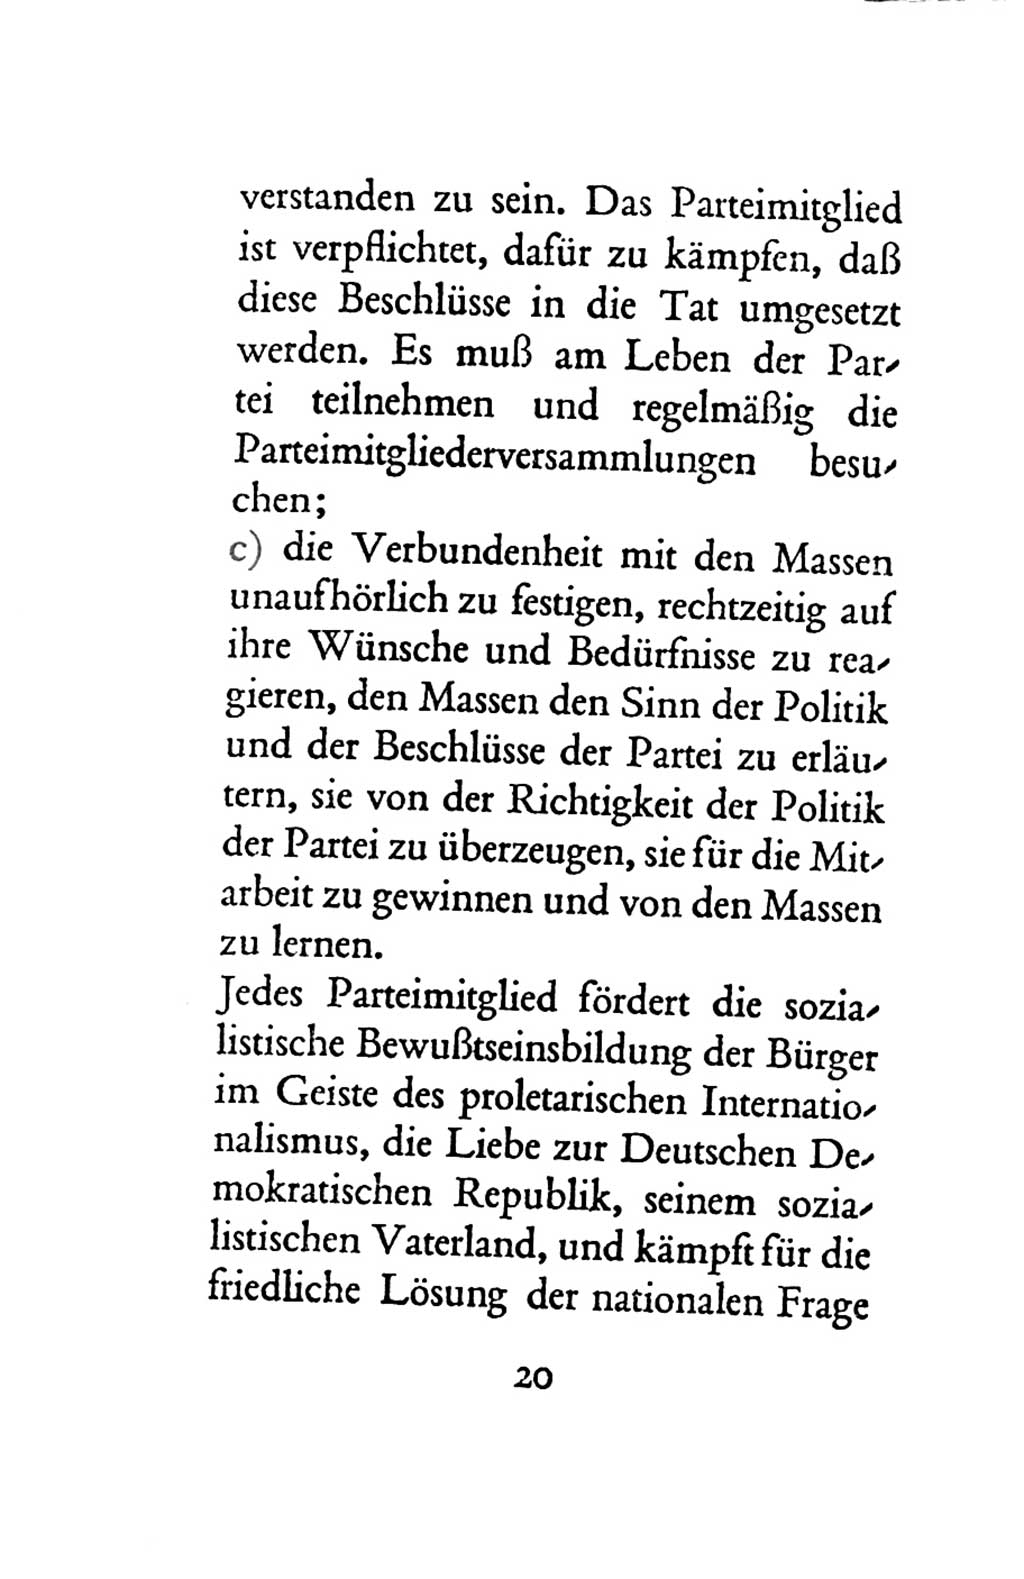 Statut der Sozialistischen Einheitspartei Deutschlands (SED) 1963, Seite 20 (St. SED DDR 1963, S. 20)